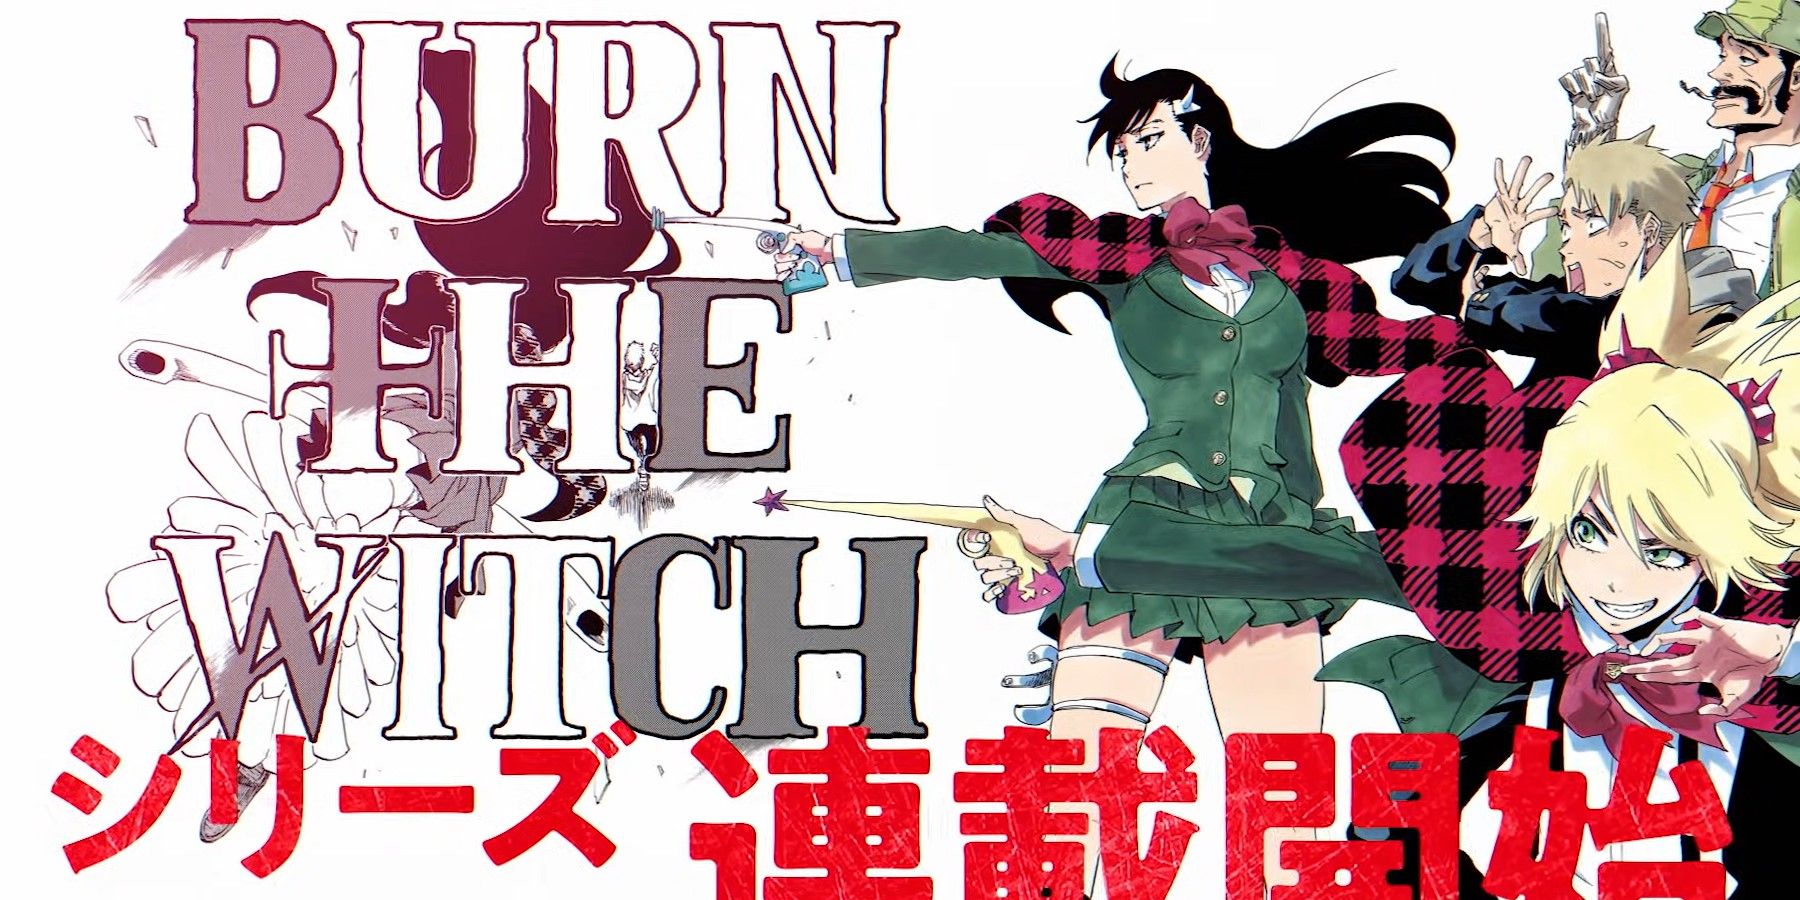 Bleach OVA: Burn the witch